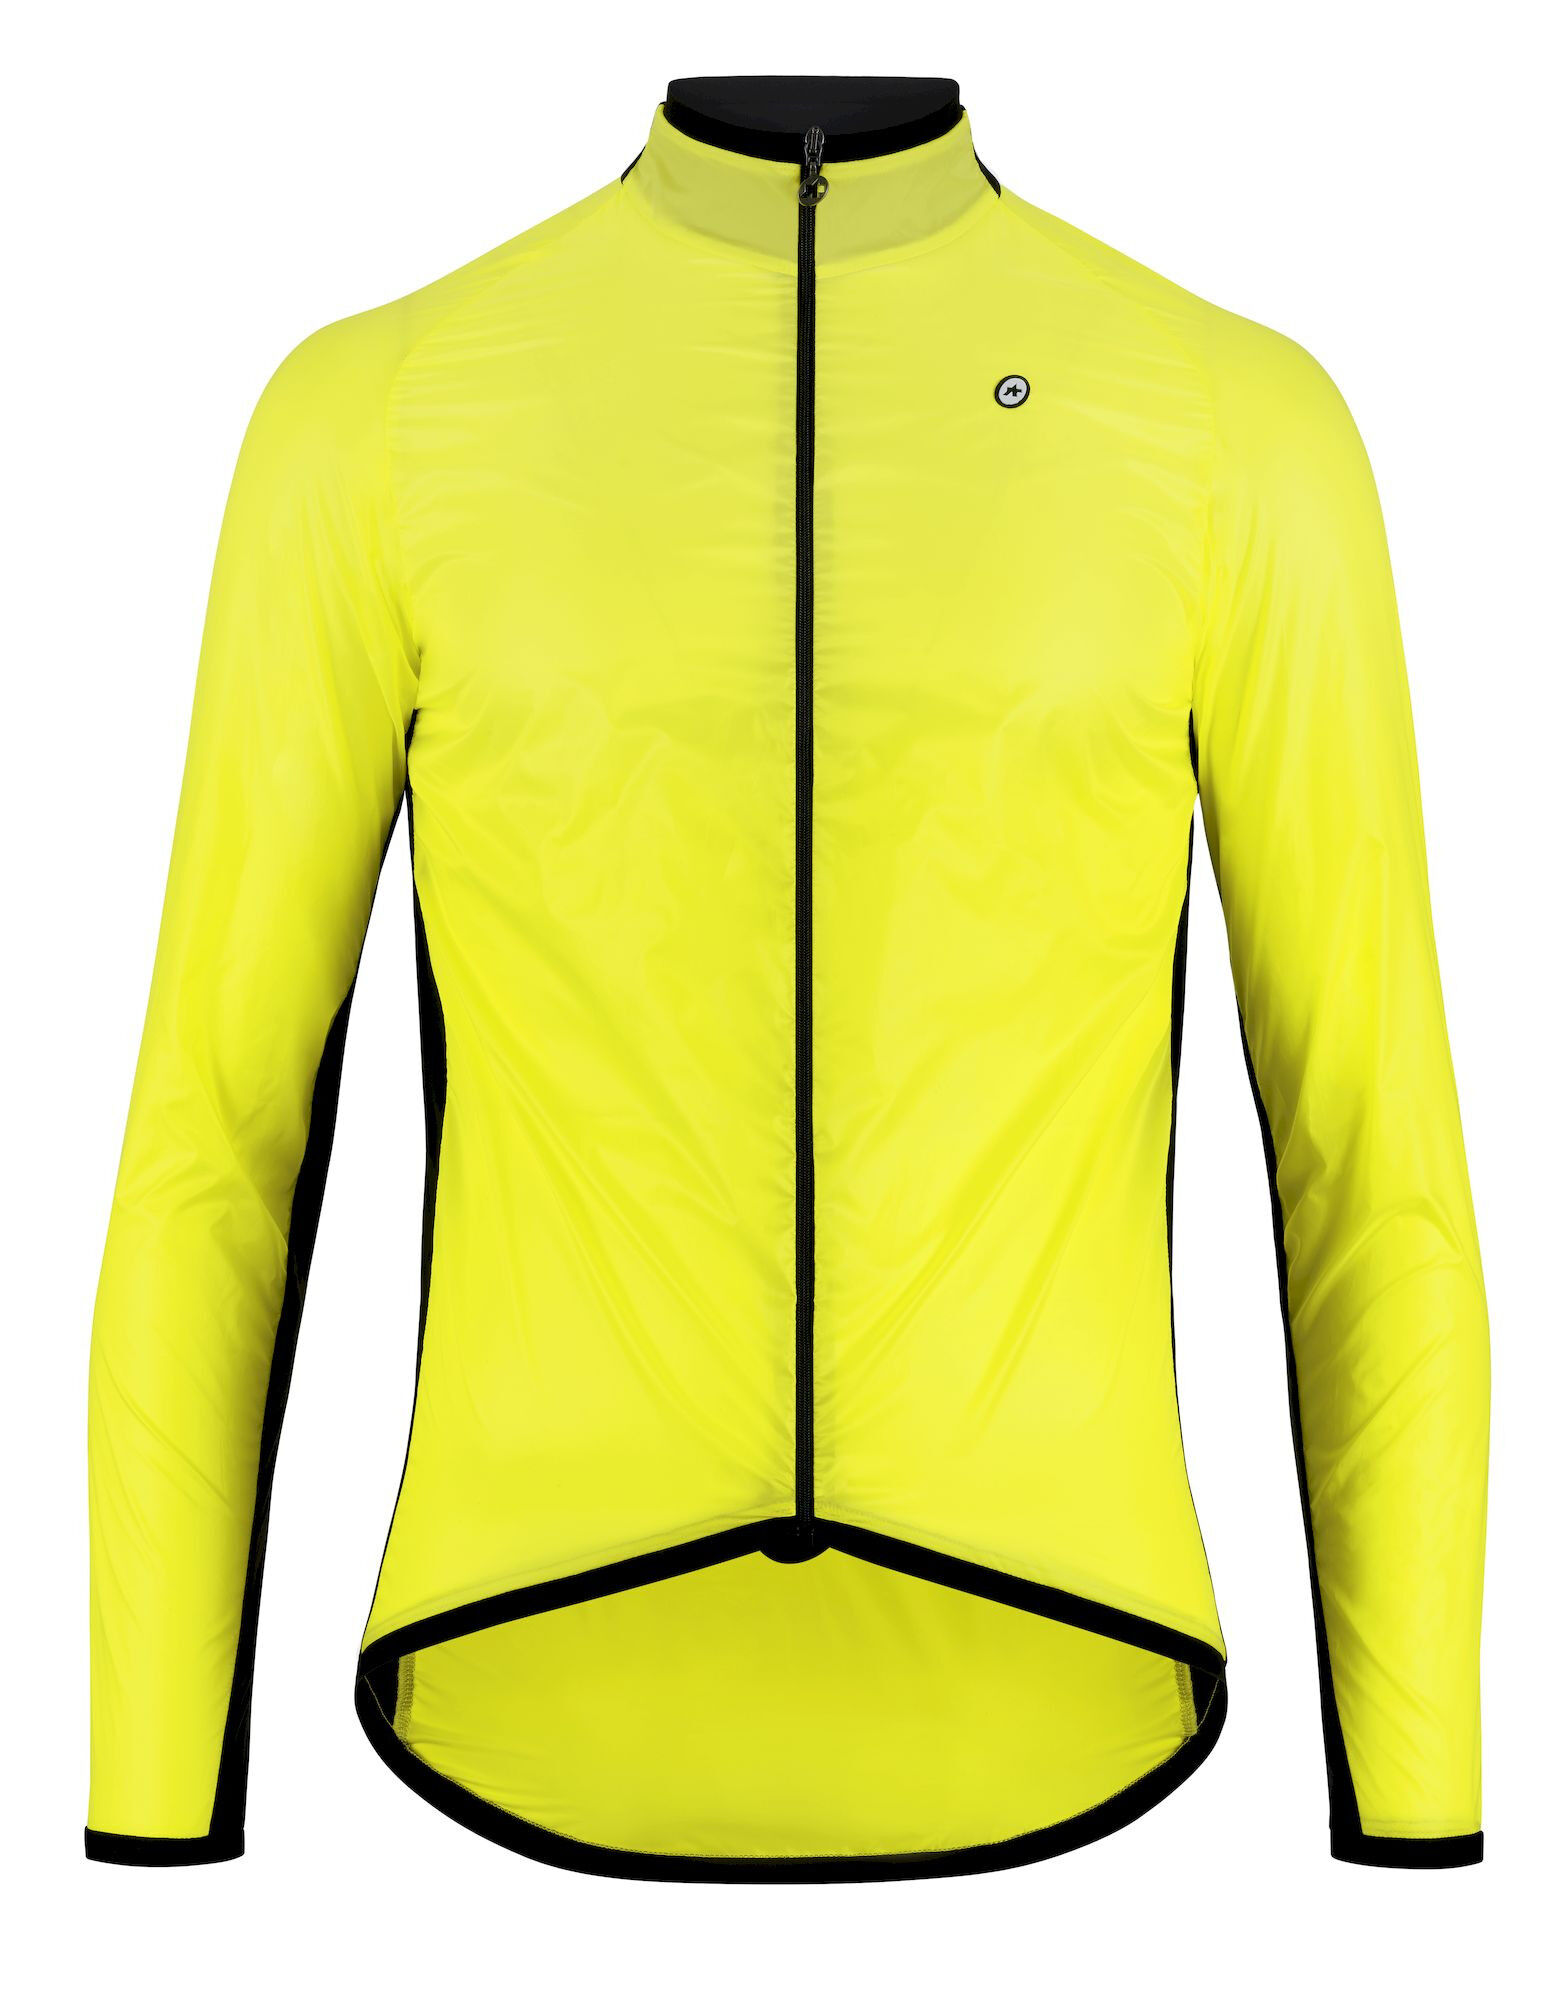 Assos Mille GT Wind Jacket C2 - Cycling windproof jacket - Men's | Hardloop